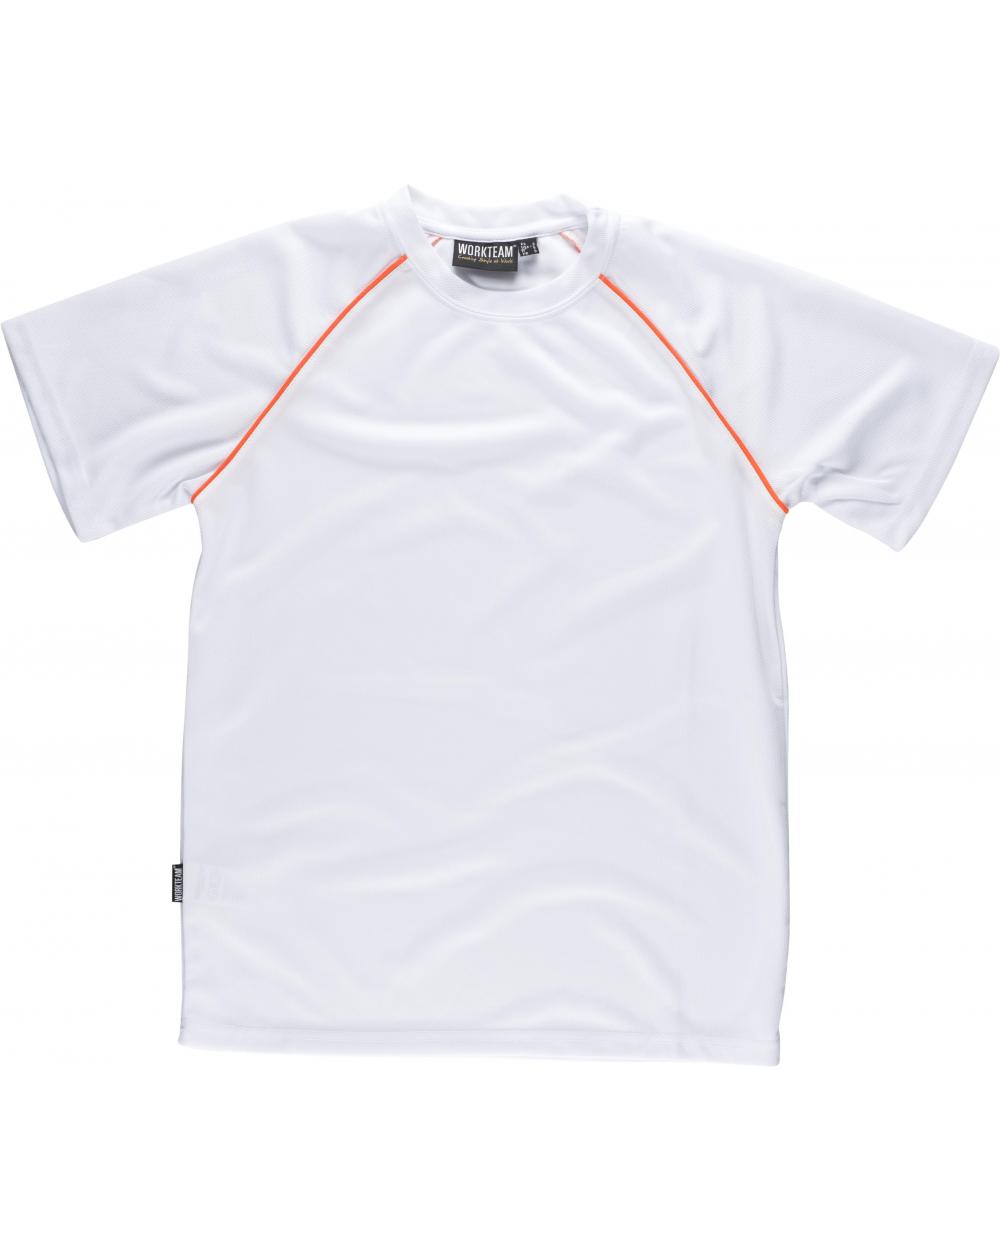 Comprar Camiseta tecnica S6640 Blanco+Naranja AV workteam delante